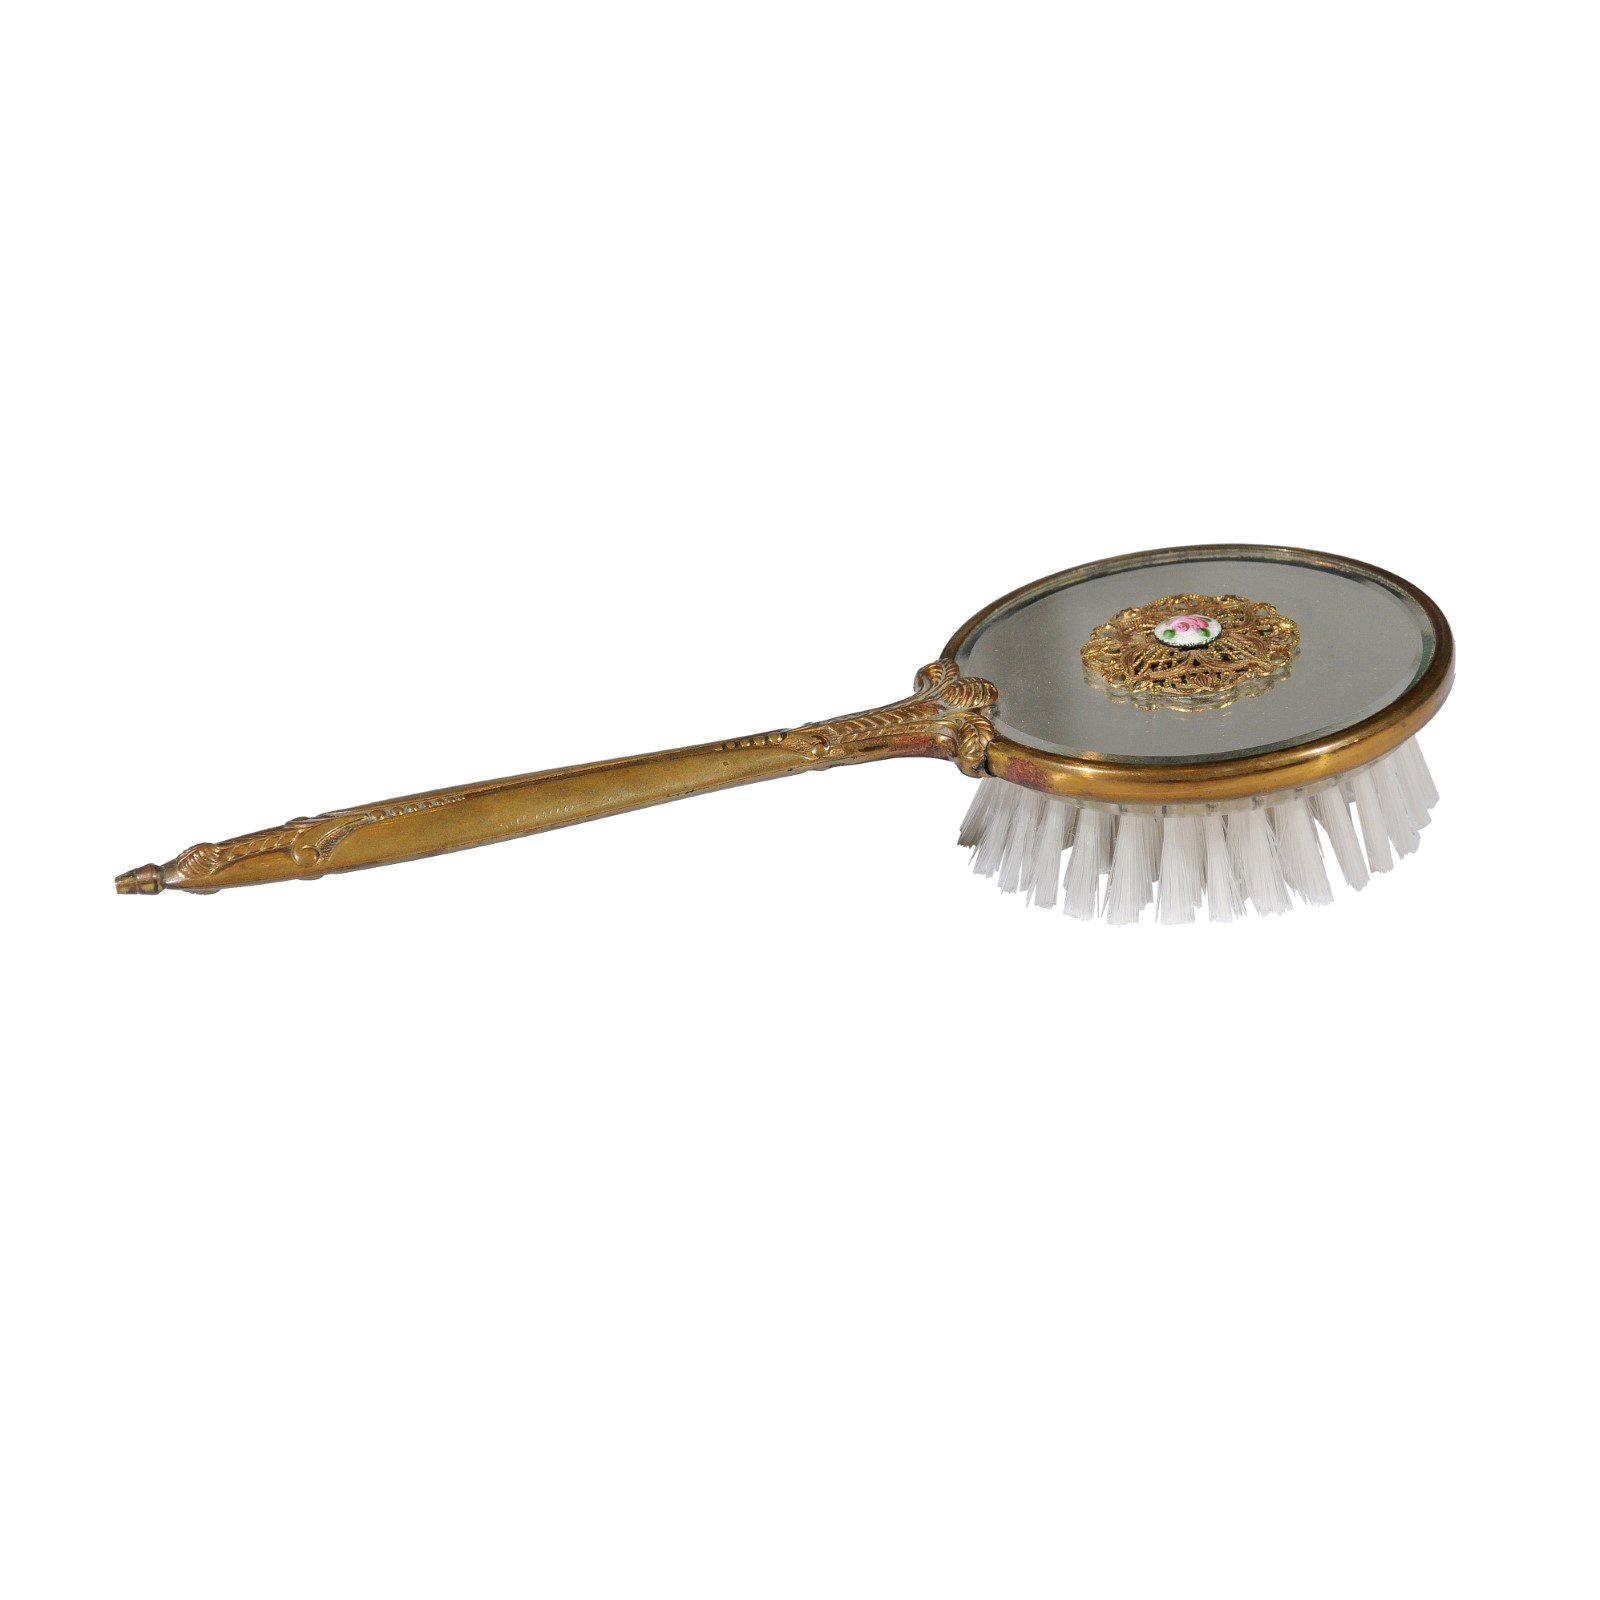 Englischer englischer verspiegelter Haarbürsten mit Messingoberfläche, filigranem Dekor und Medaillon